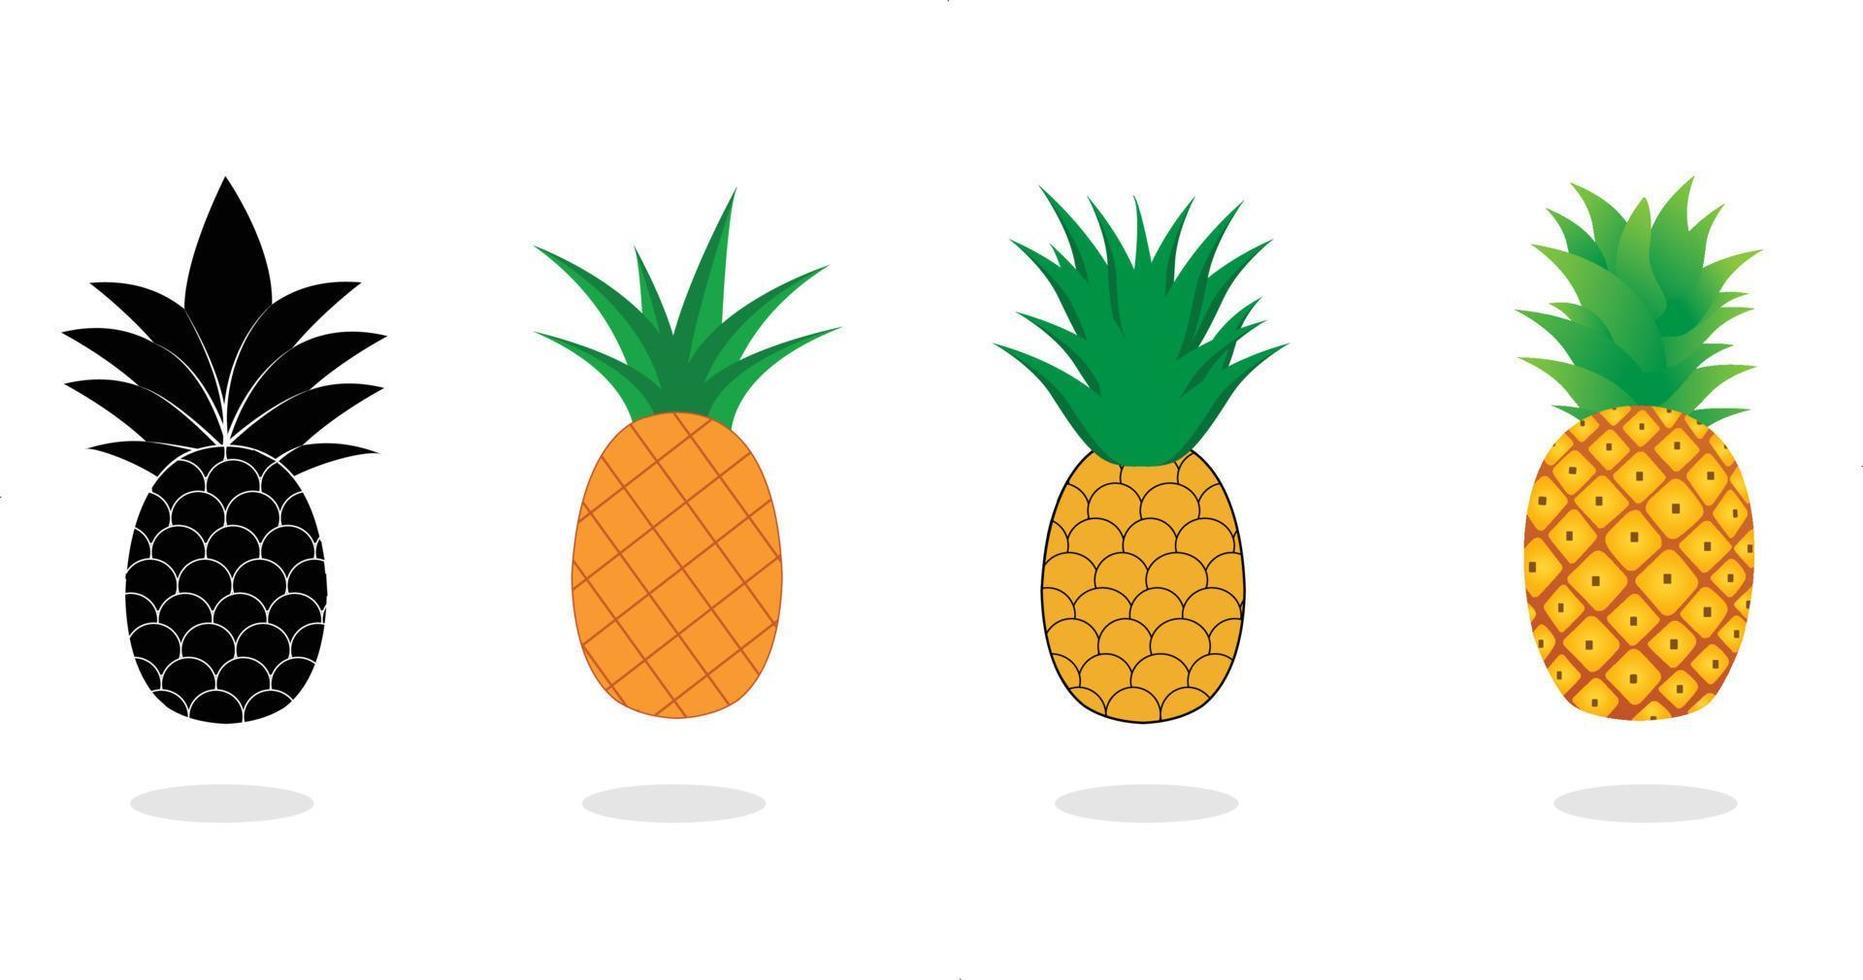 Ananas-Sammlung. Illustration der Ananasfrucht mit isoliertem Cartoon-Stil auf weißem Hintergrund. sommerfrüchte, für ein gesundes und natürliches leben, vektorillustration. vektor